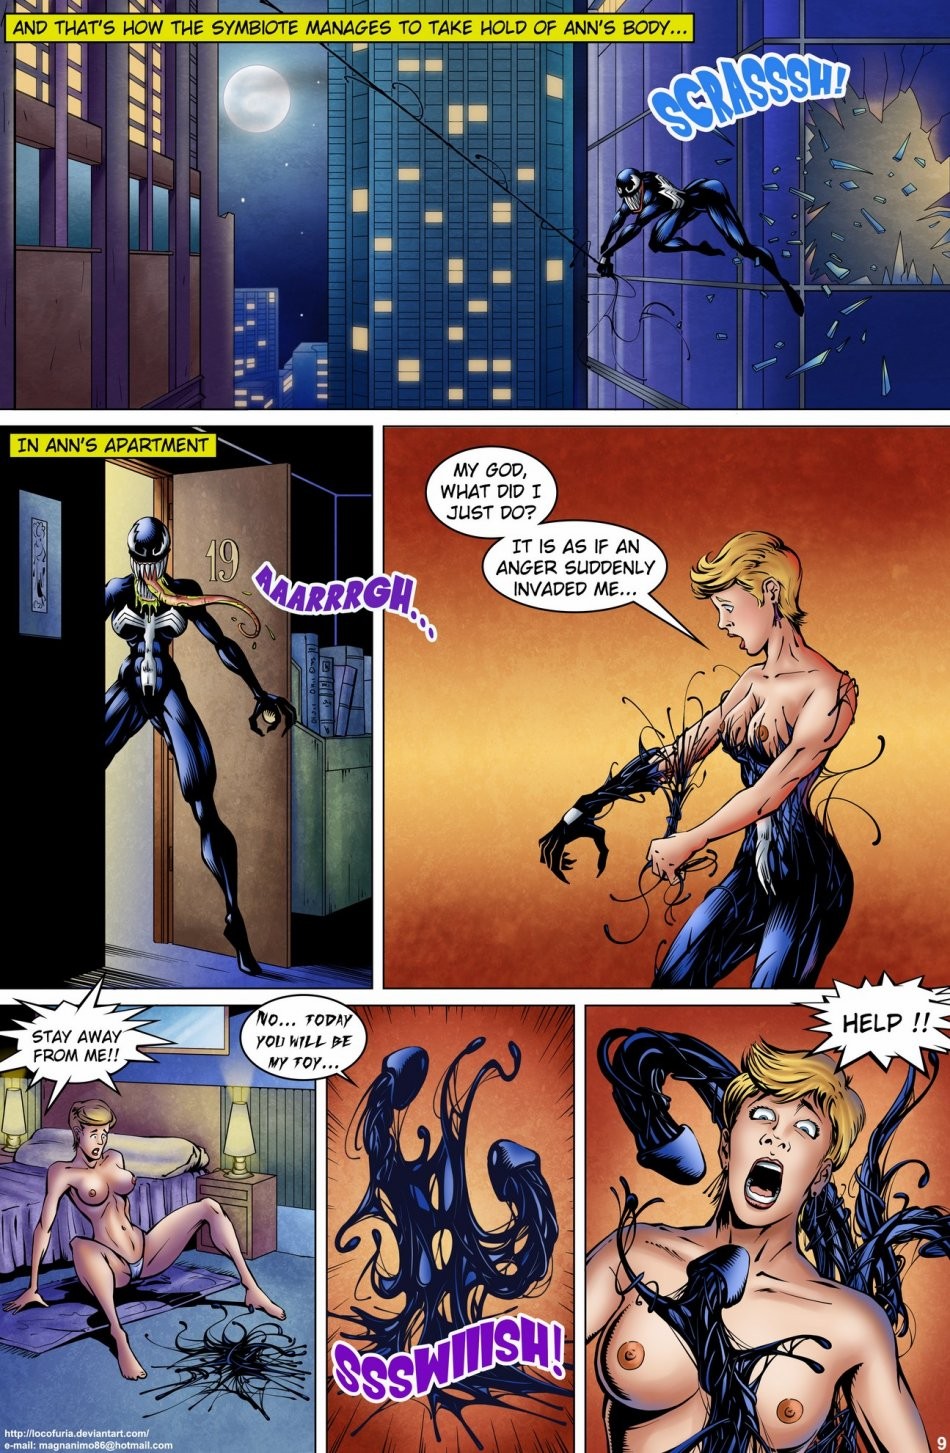 Symbiote porn comic picture 11